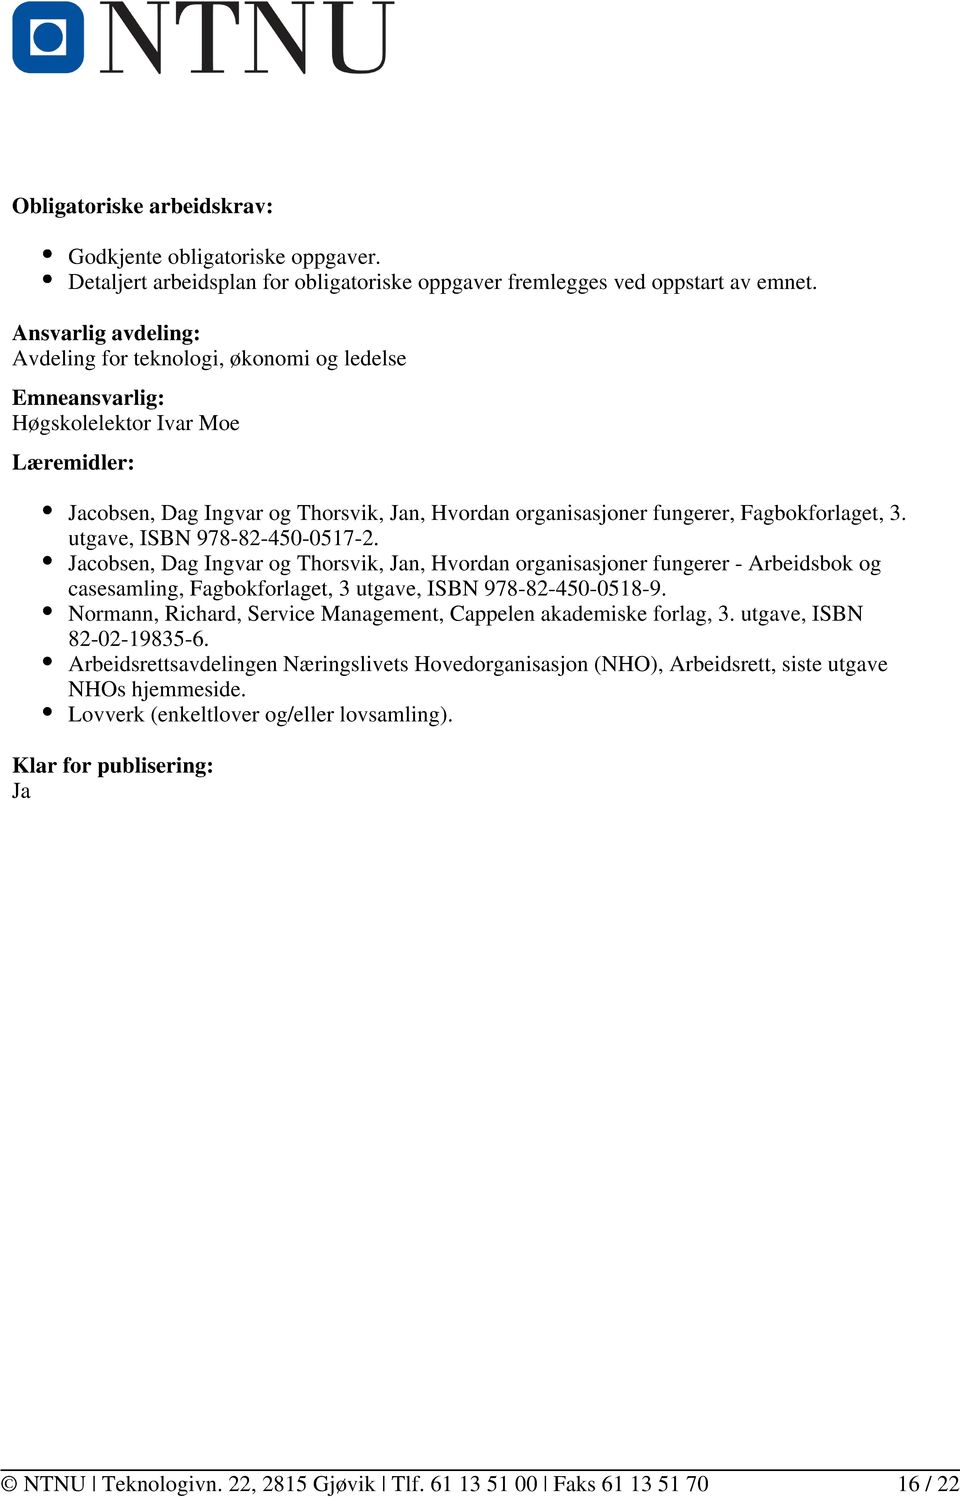 Fagbokforlaget, 3. utgave, ISBN 978-82-450-0517-2. Jacobsen, Dag Ingvar og Thorsvik, Jan, Hvordan organisasjoner fungerer - Arbeidsbok og casesamling, Fagbokforlaget, 3 utgave, ISBN 978-82-450-0518-9.